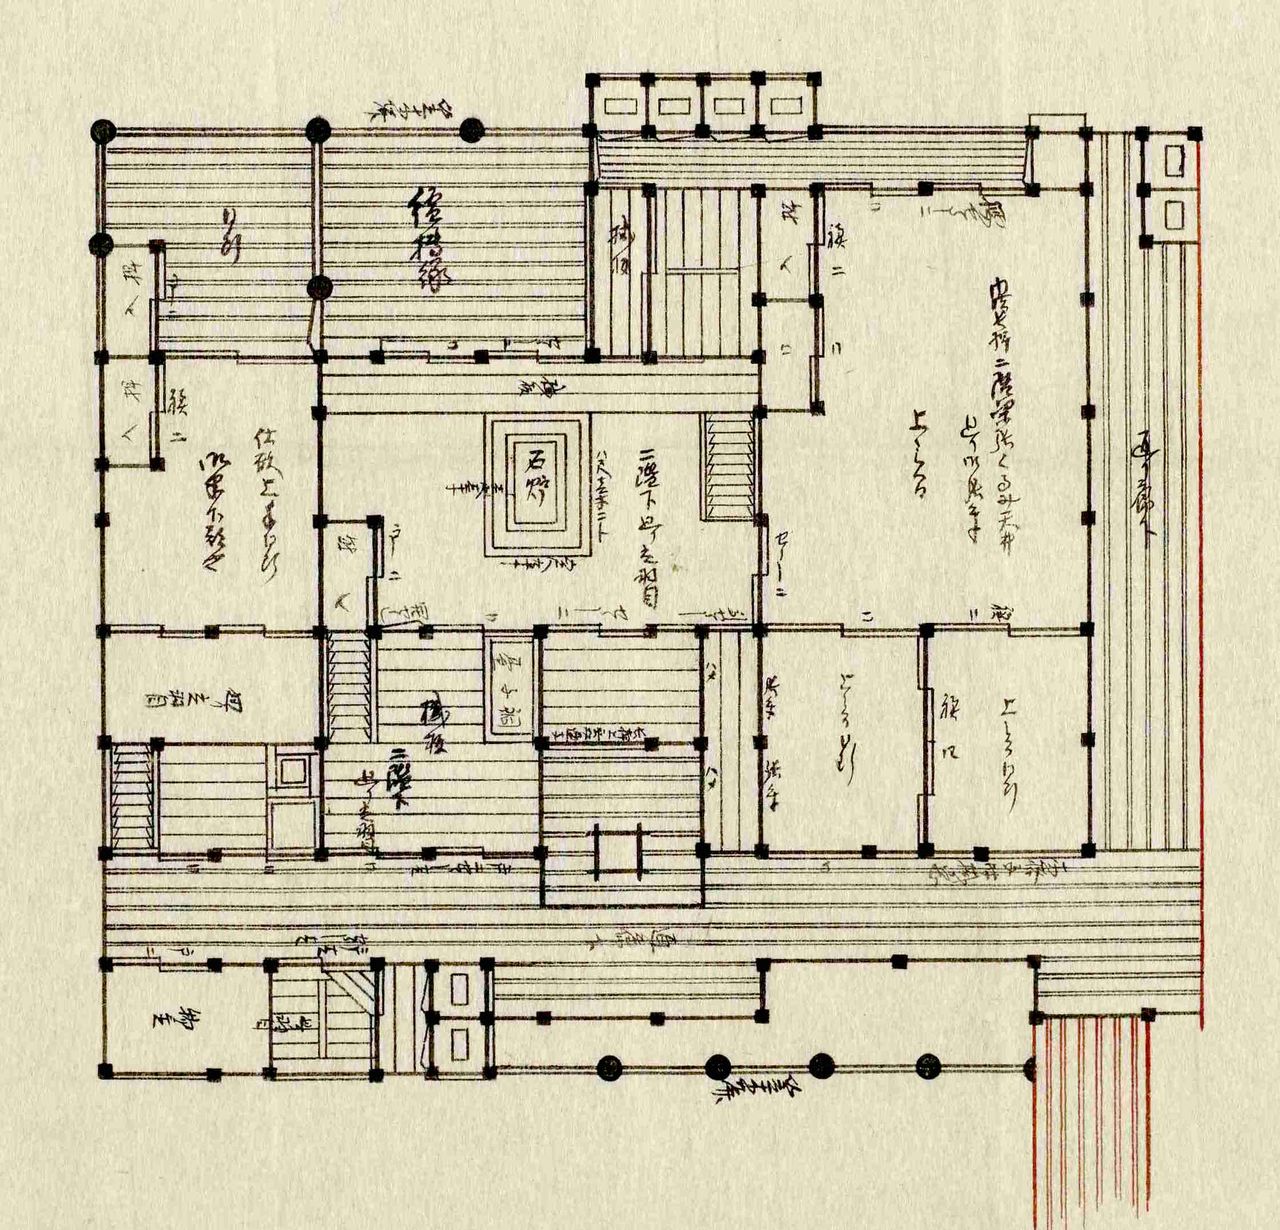 “御半下部屋地绘图”乃为“御末”们居住之杂居室。一般推测，或许十几个人在此房间共同生活。藏于东京都立中央图书馆特别文库室